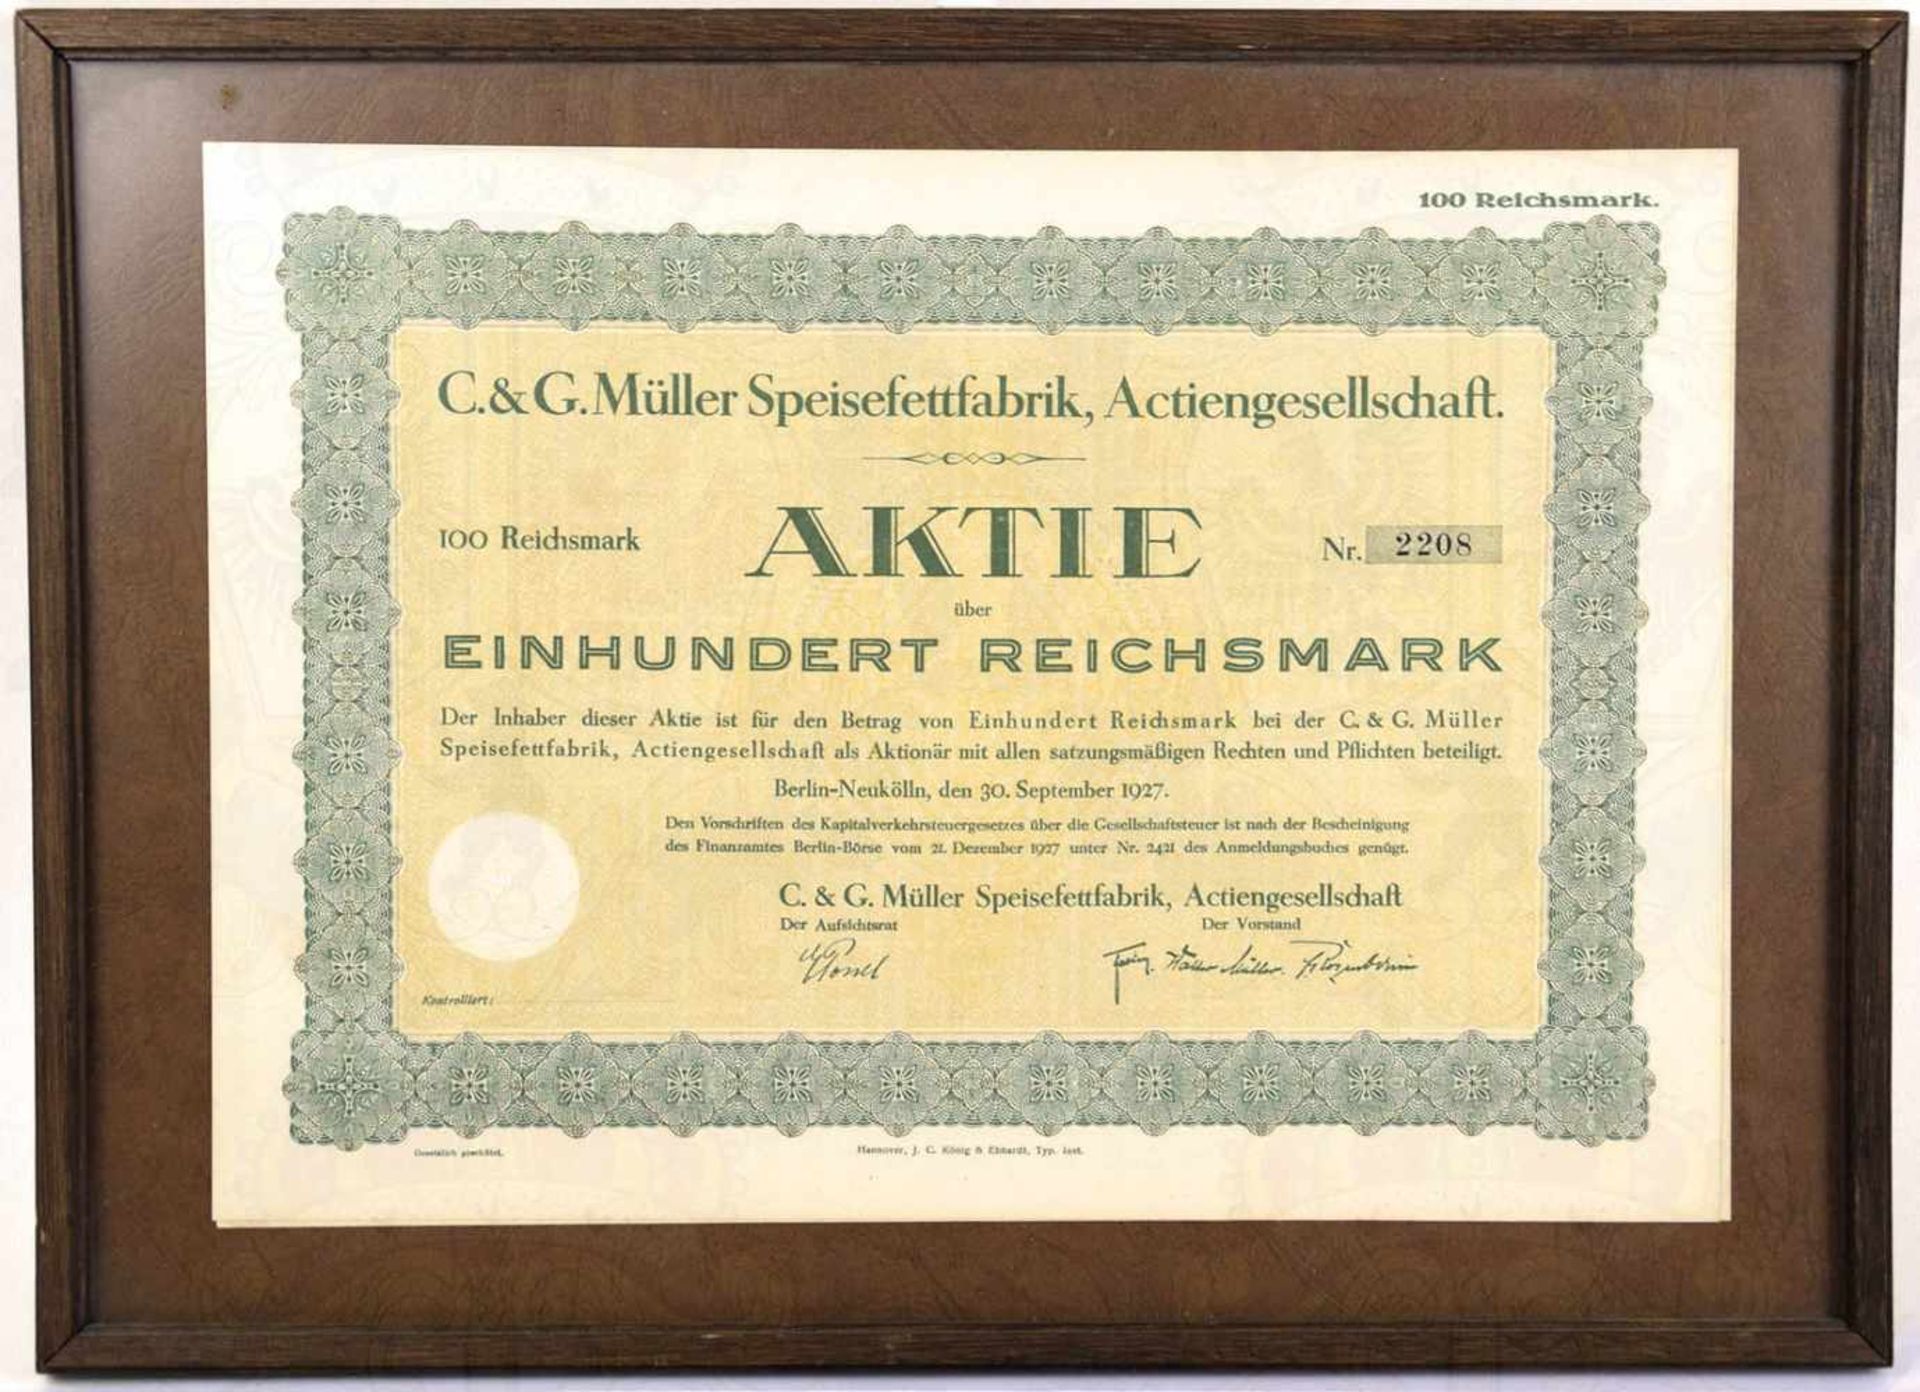 AKTIE DER C. & G. MÜLLER SPEISEFETTFABRIK BERLIN über 100 Reichsmark, 1927, Prägesiegel,